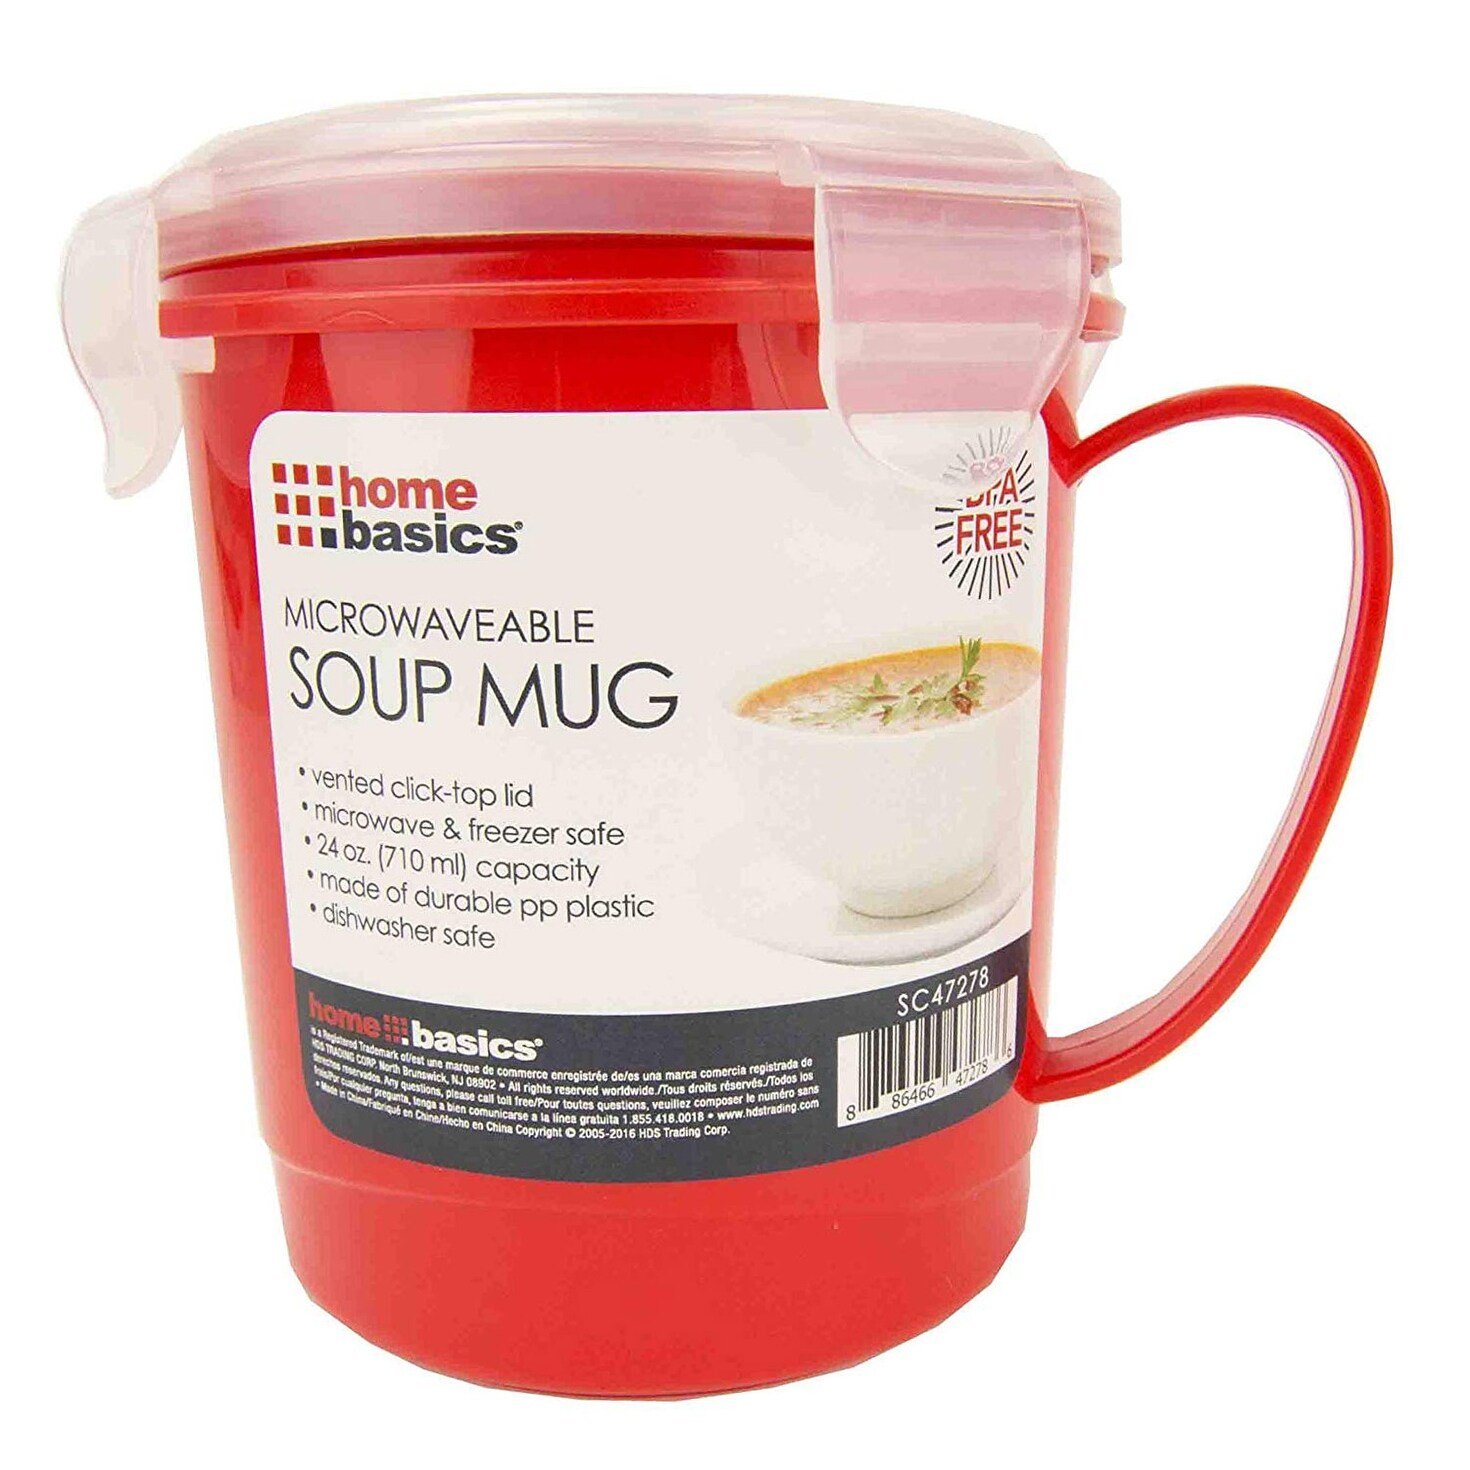 Microwave Safe Soup Mug With LidBestMicrowave